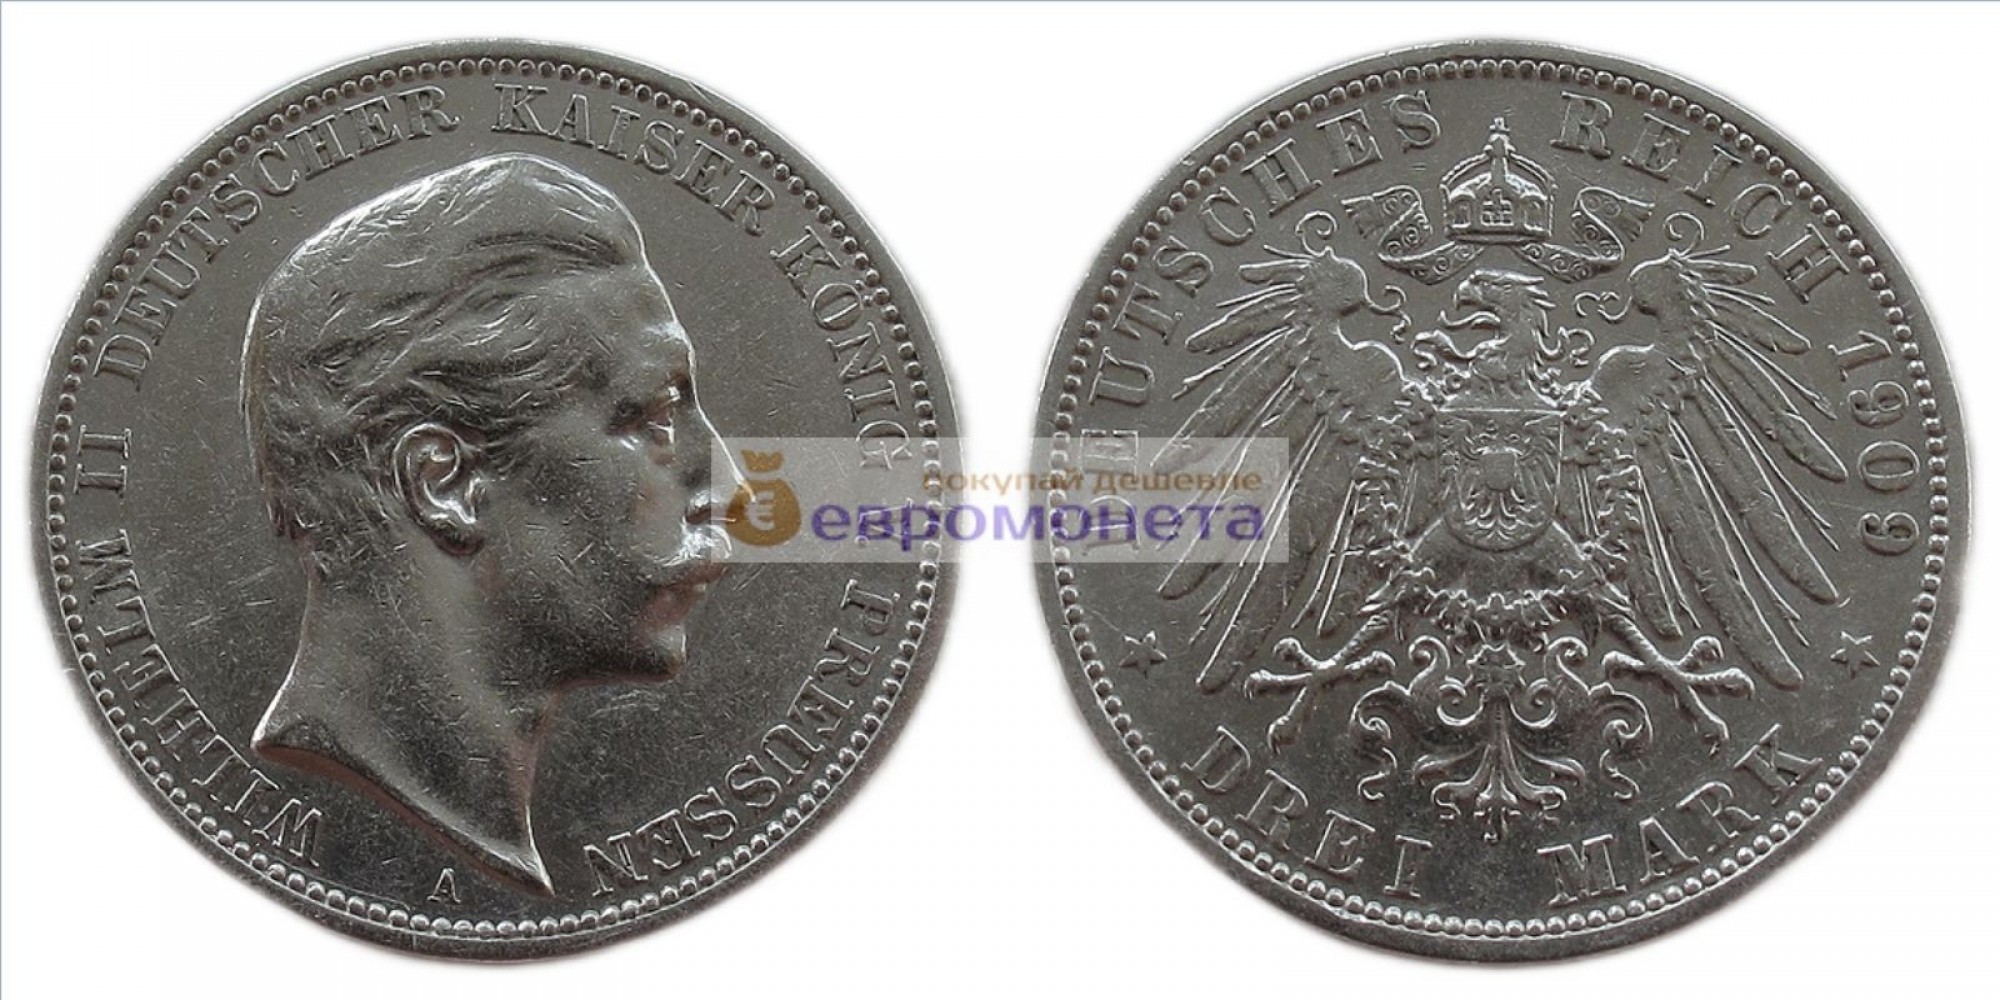 Германская империя Пруссия 3 марки 1909 год "A" Вильгельм II. Серебро.